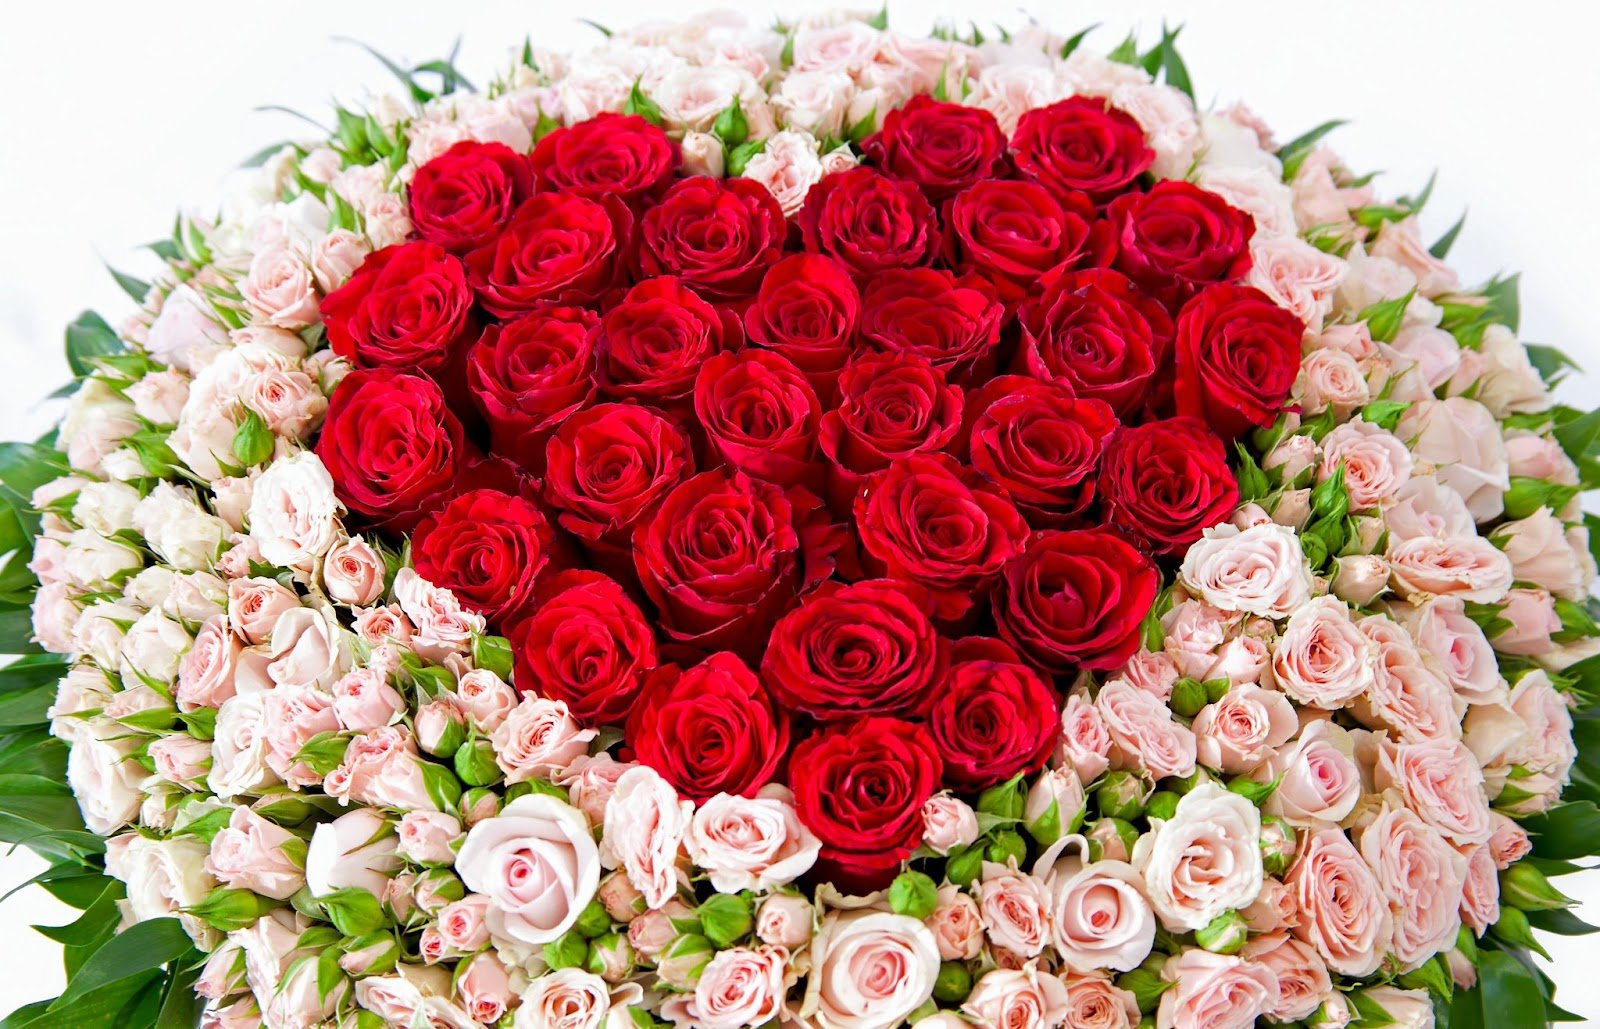 Большие букеты роз купить недорого в Москве – заказать цветы с доставкой, цены от ₽